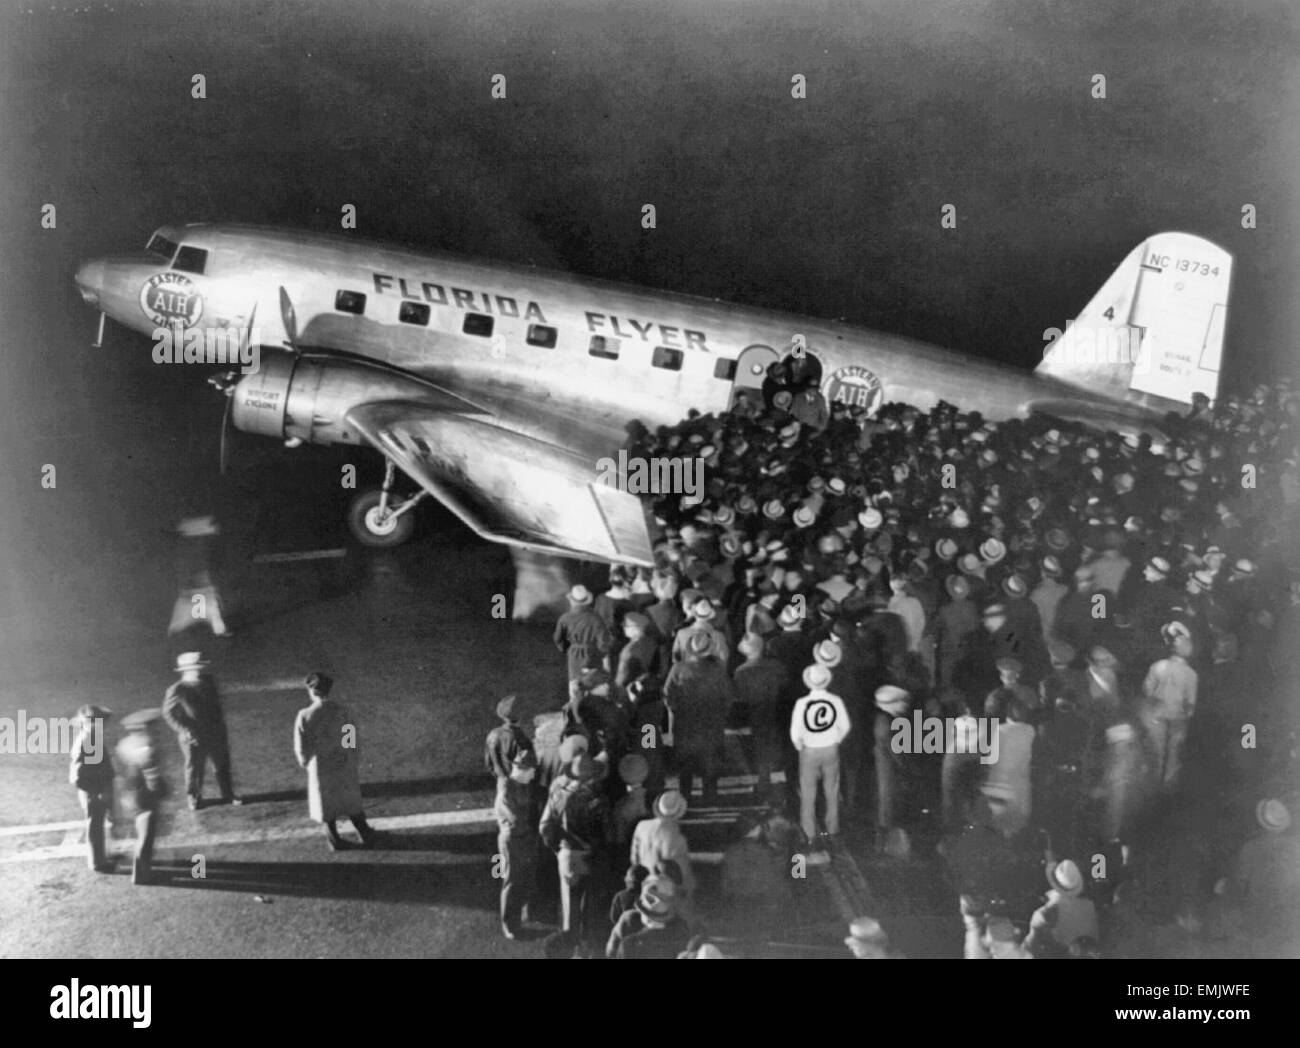 Florida Flyer llega al aeropuerto de Newark 1934 Foto de stock